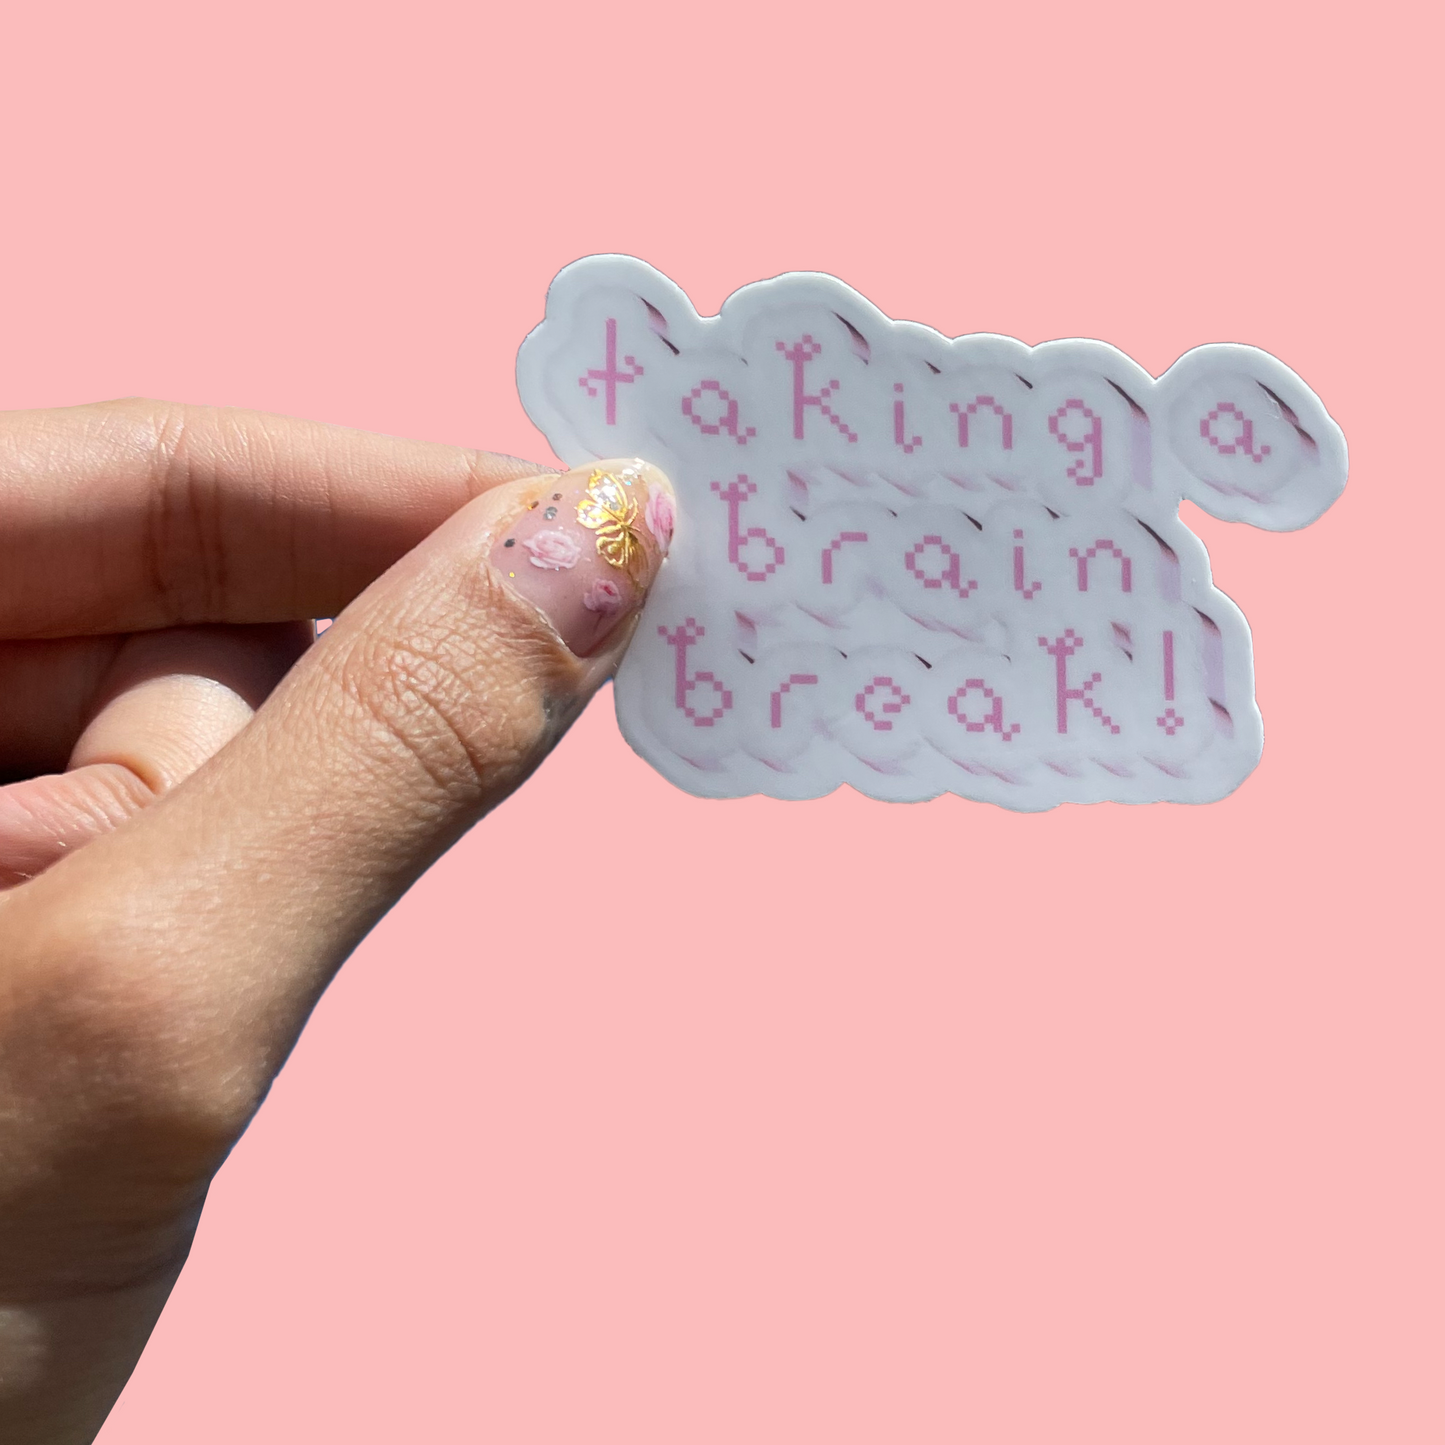 taking a brain break! sticker